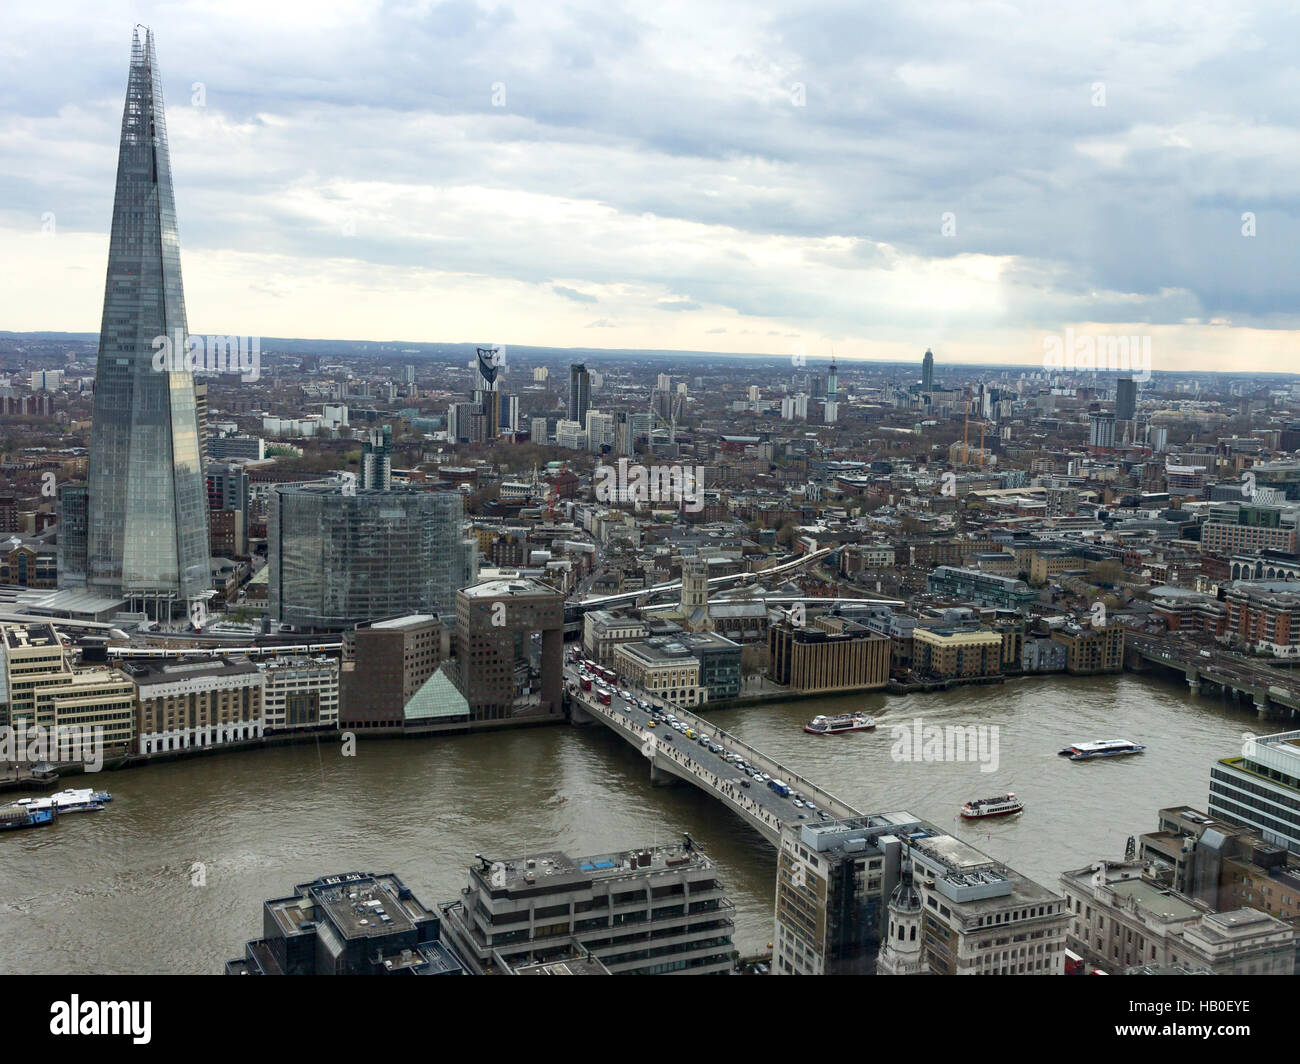 Stadtbild Ansicht von London mit der Themse, London Bridge und der Shard Gebäude Prominente. Stockfoto